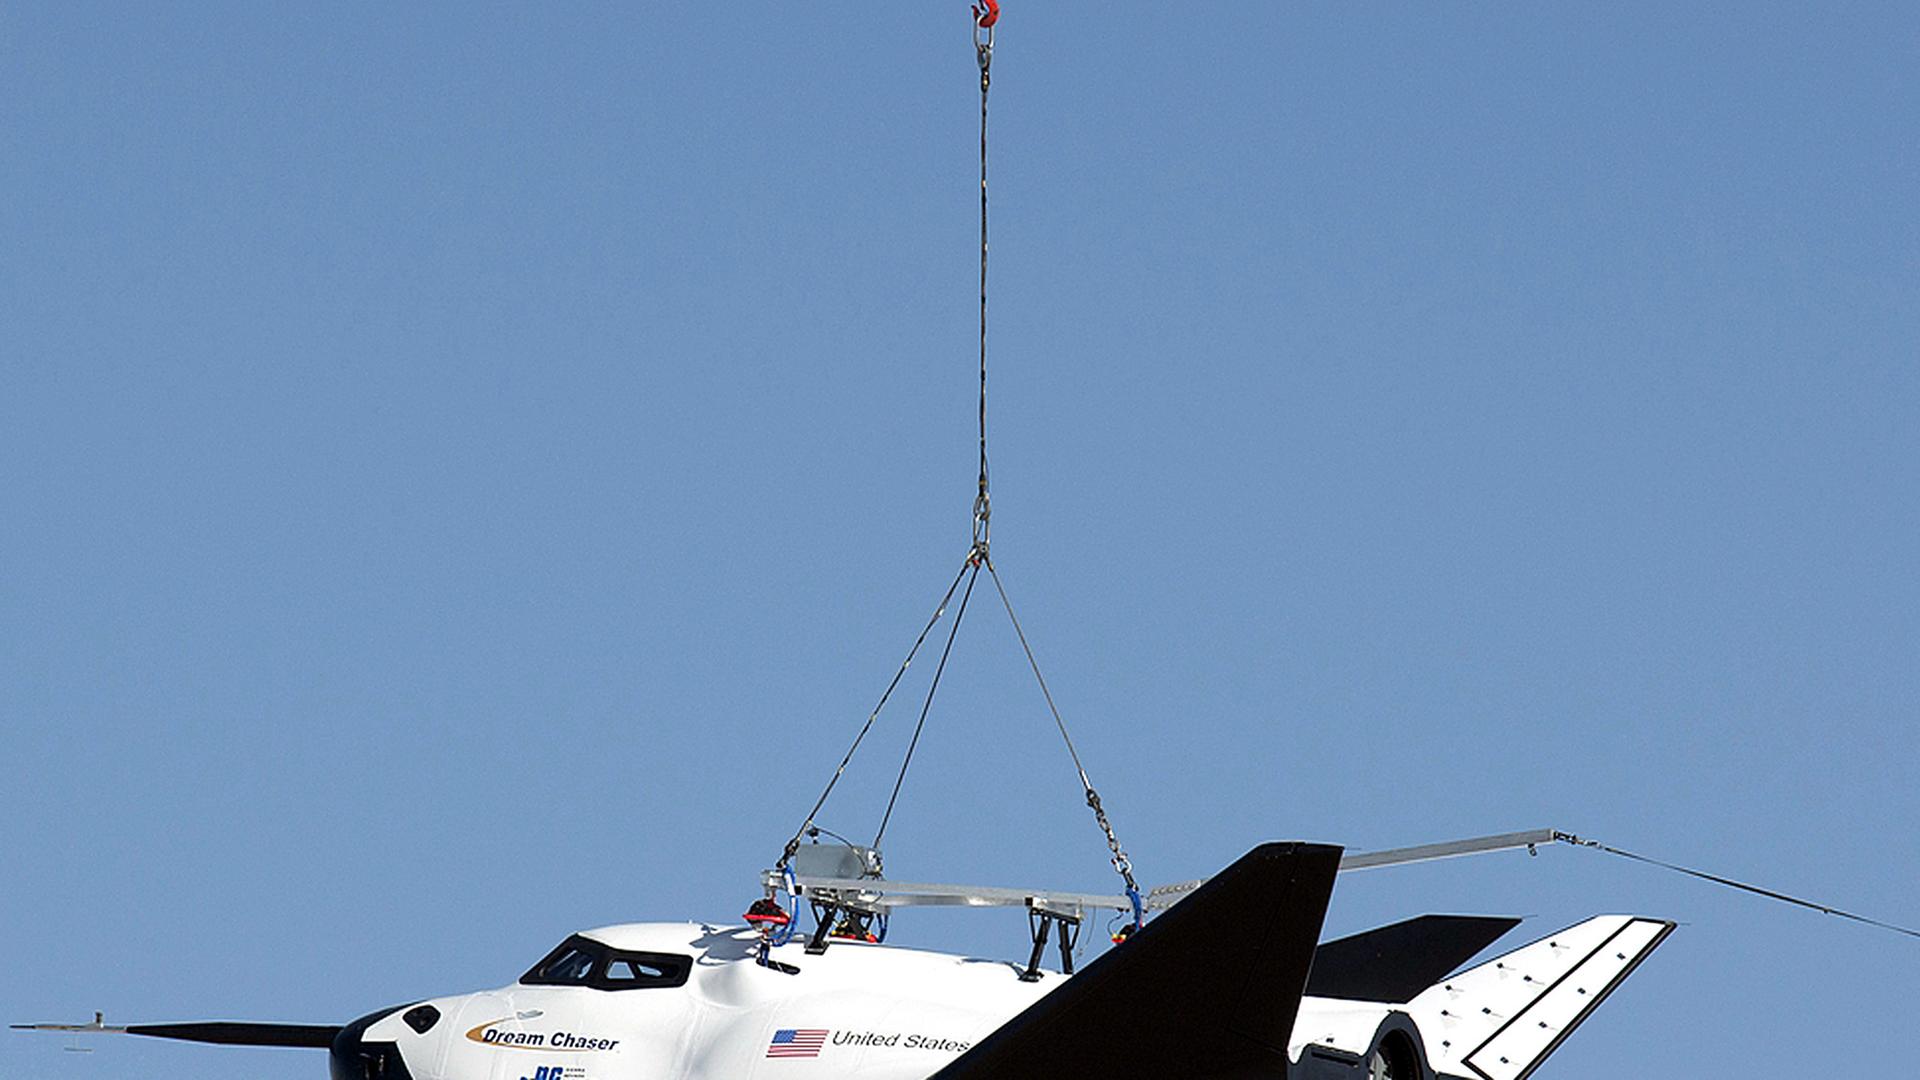 Ein Hubschrauber trägt den Mini-Shuttle Dream Chaser an einem Seil.